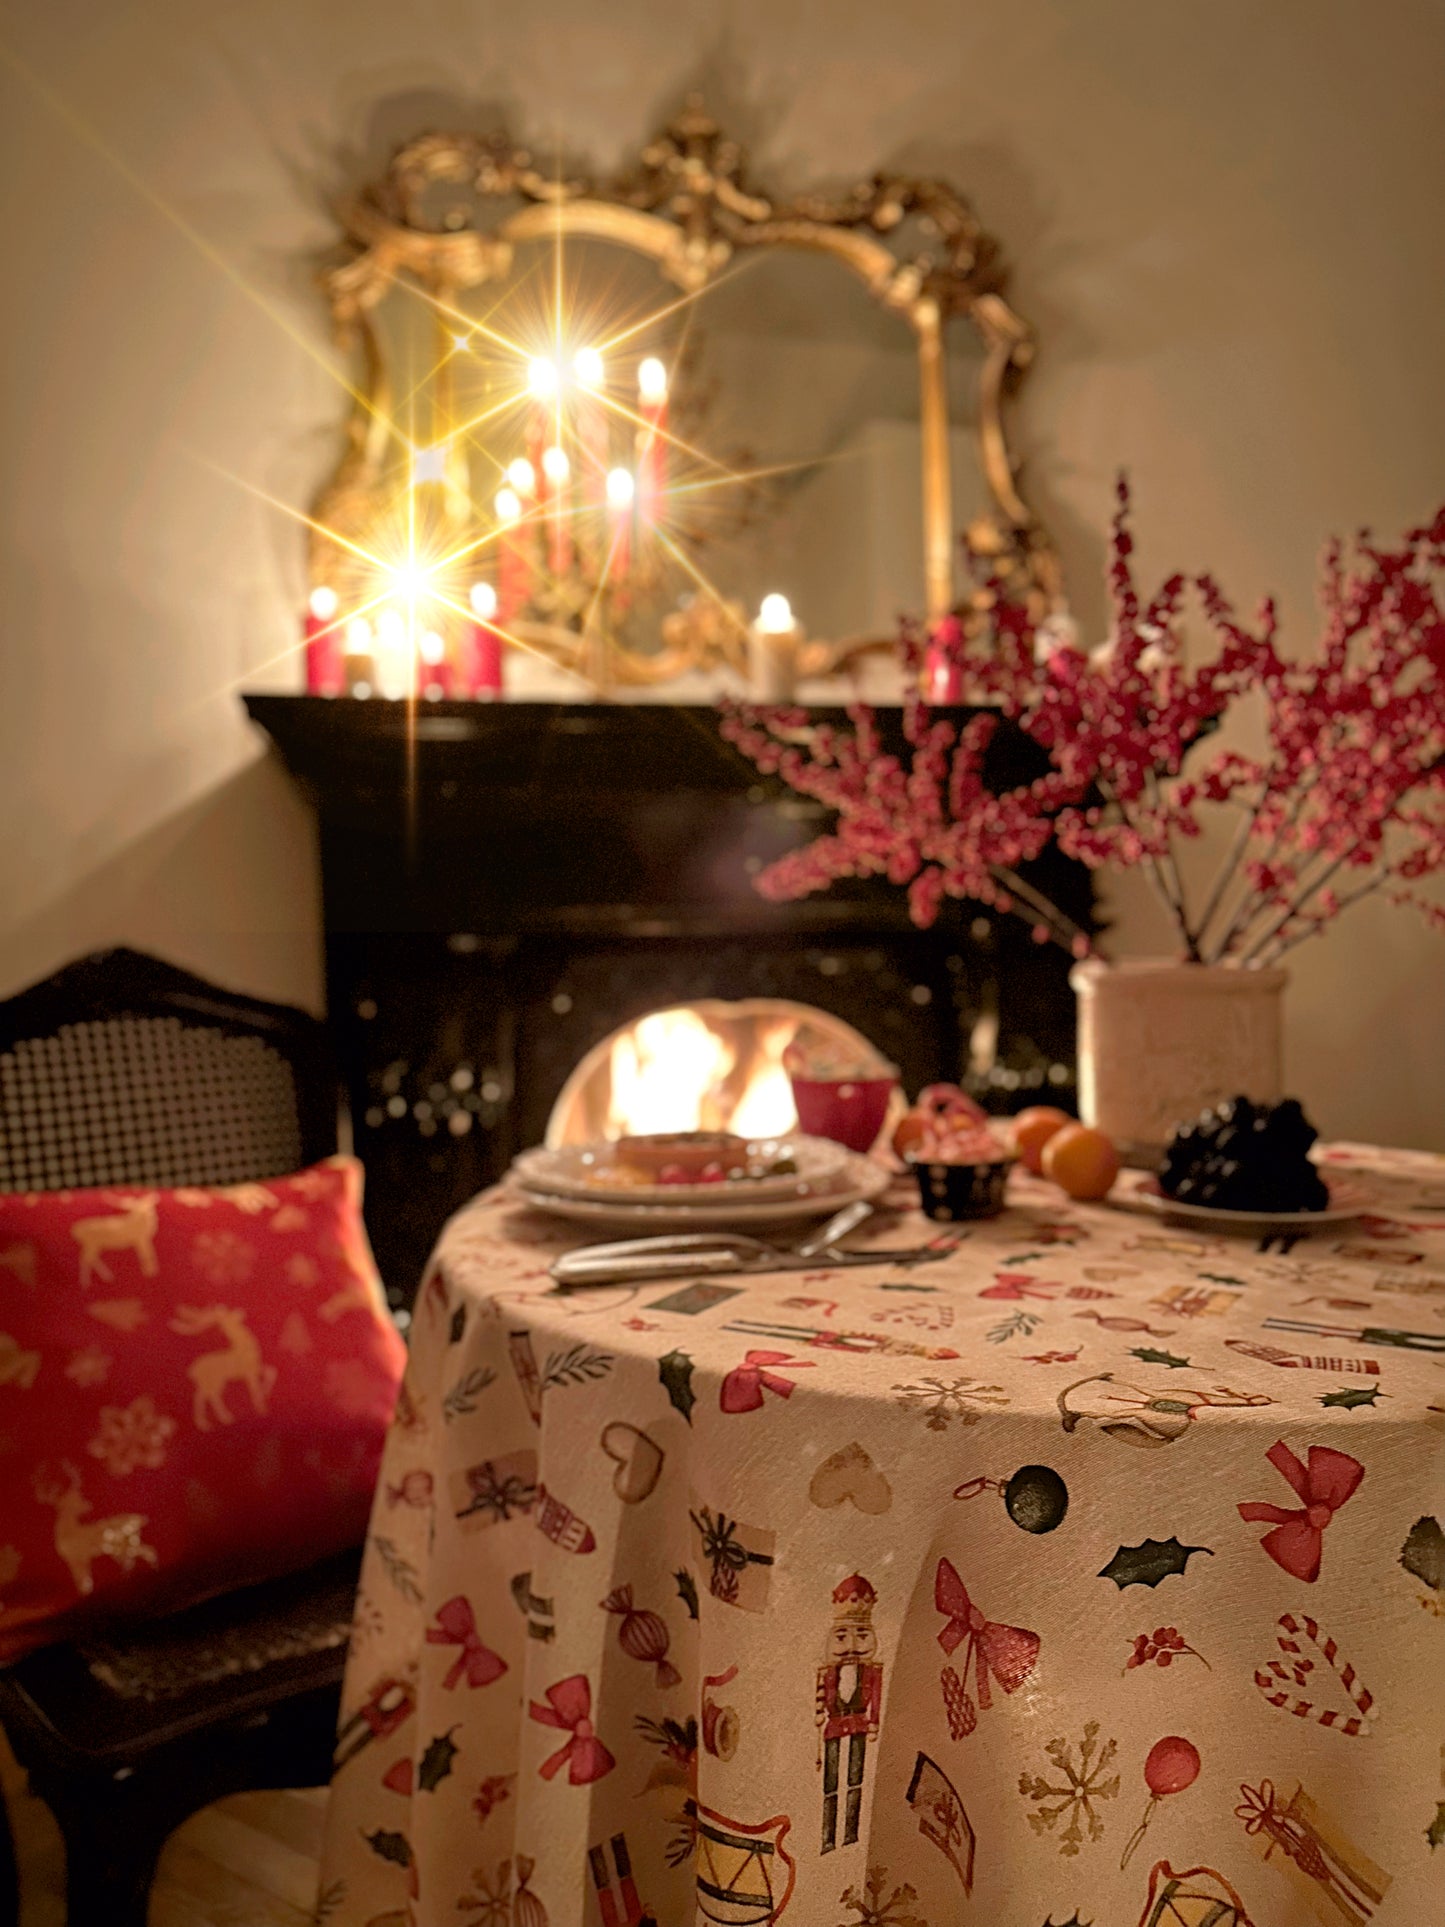 Rectangular Tablecloth, Christmas motive | Christmas Story